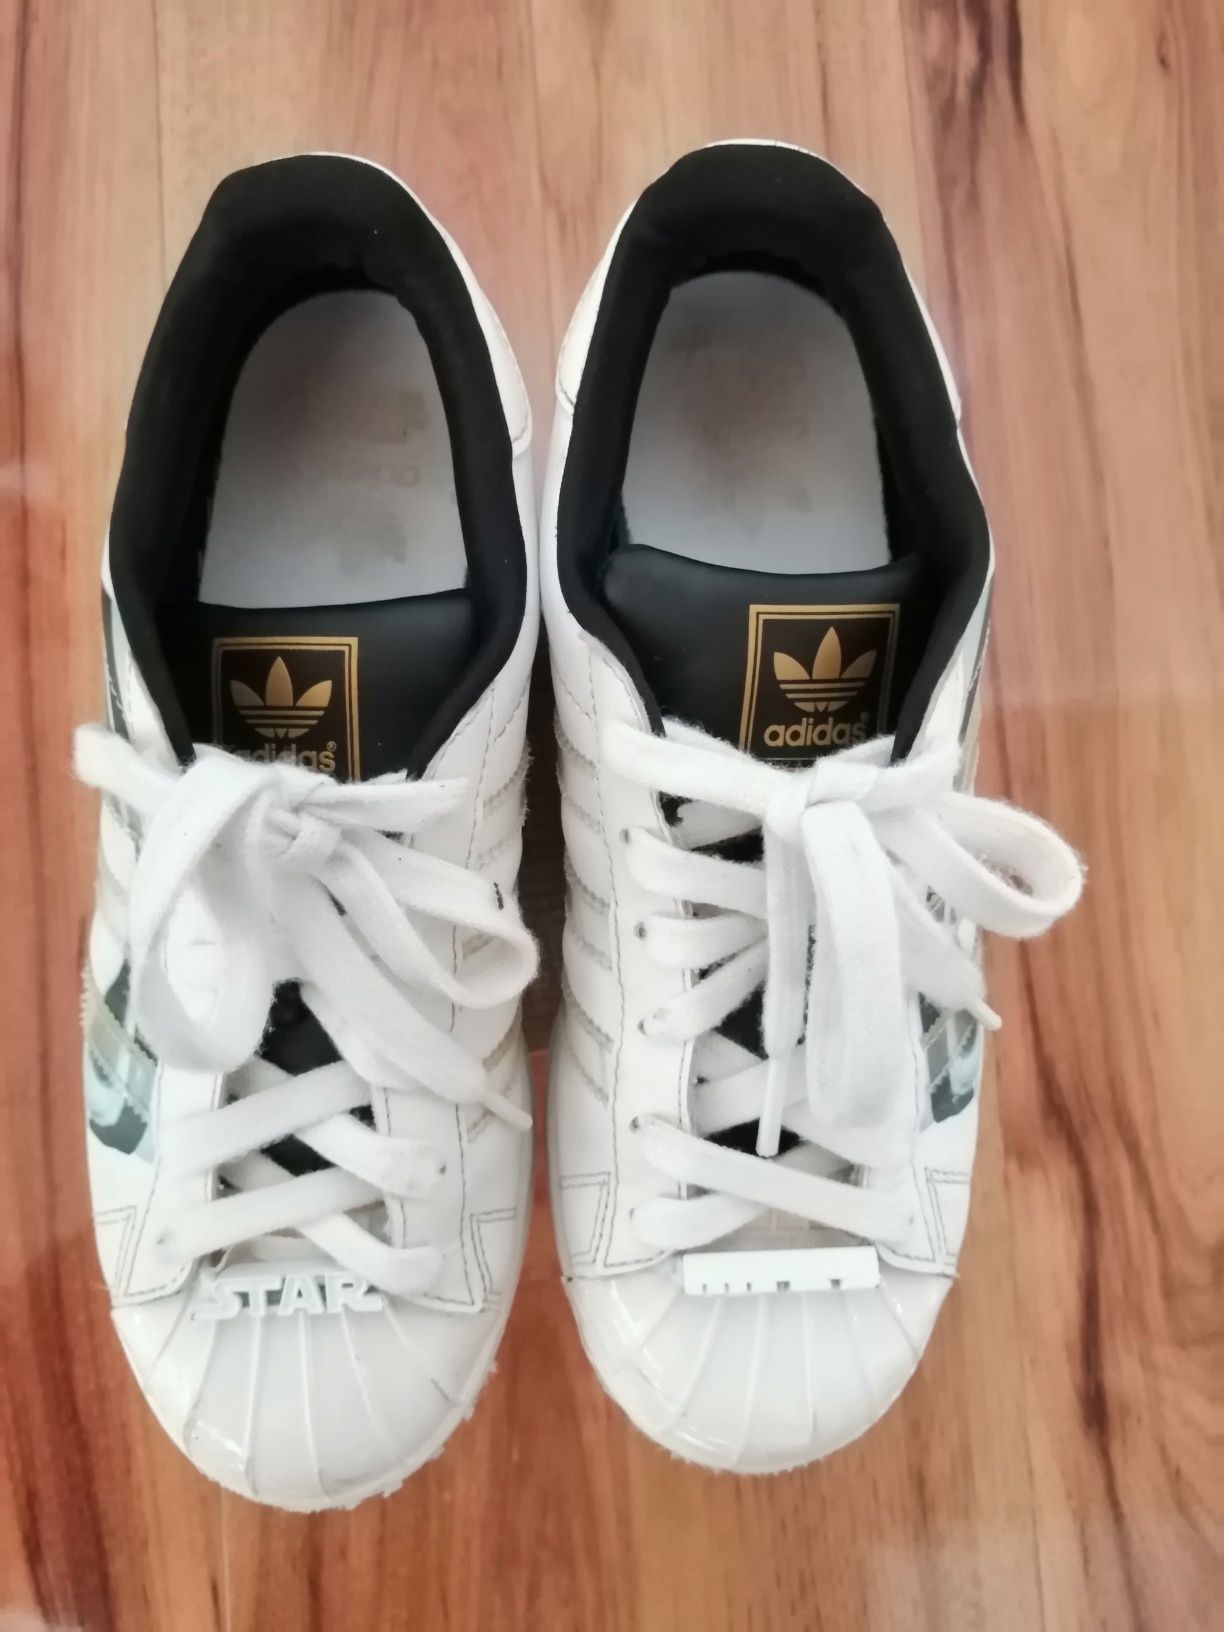 Białe buty sportowe adidas Superstar Star Wars, roz36i 2/3